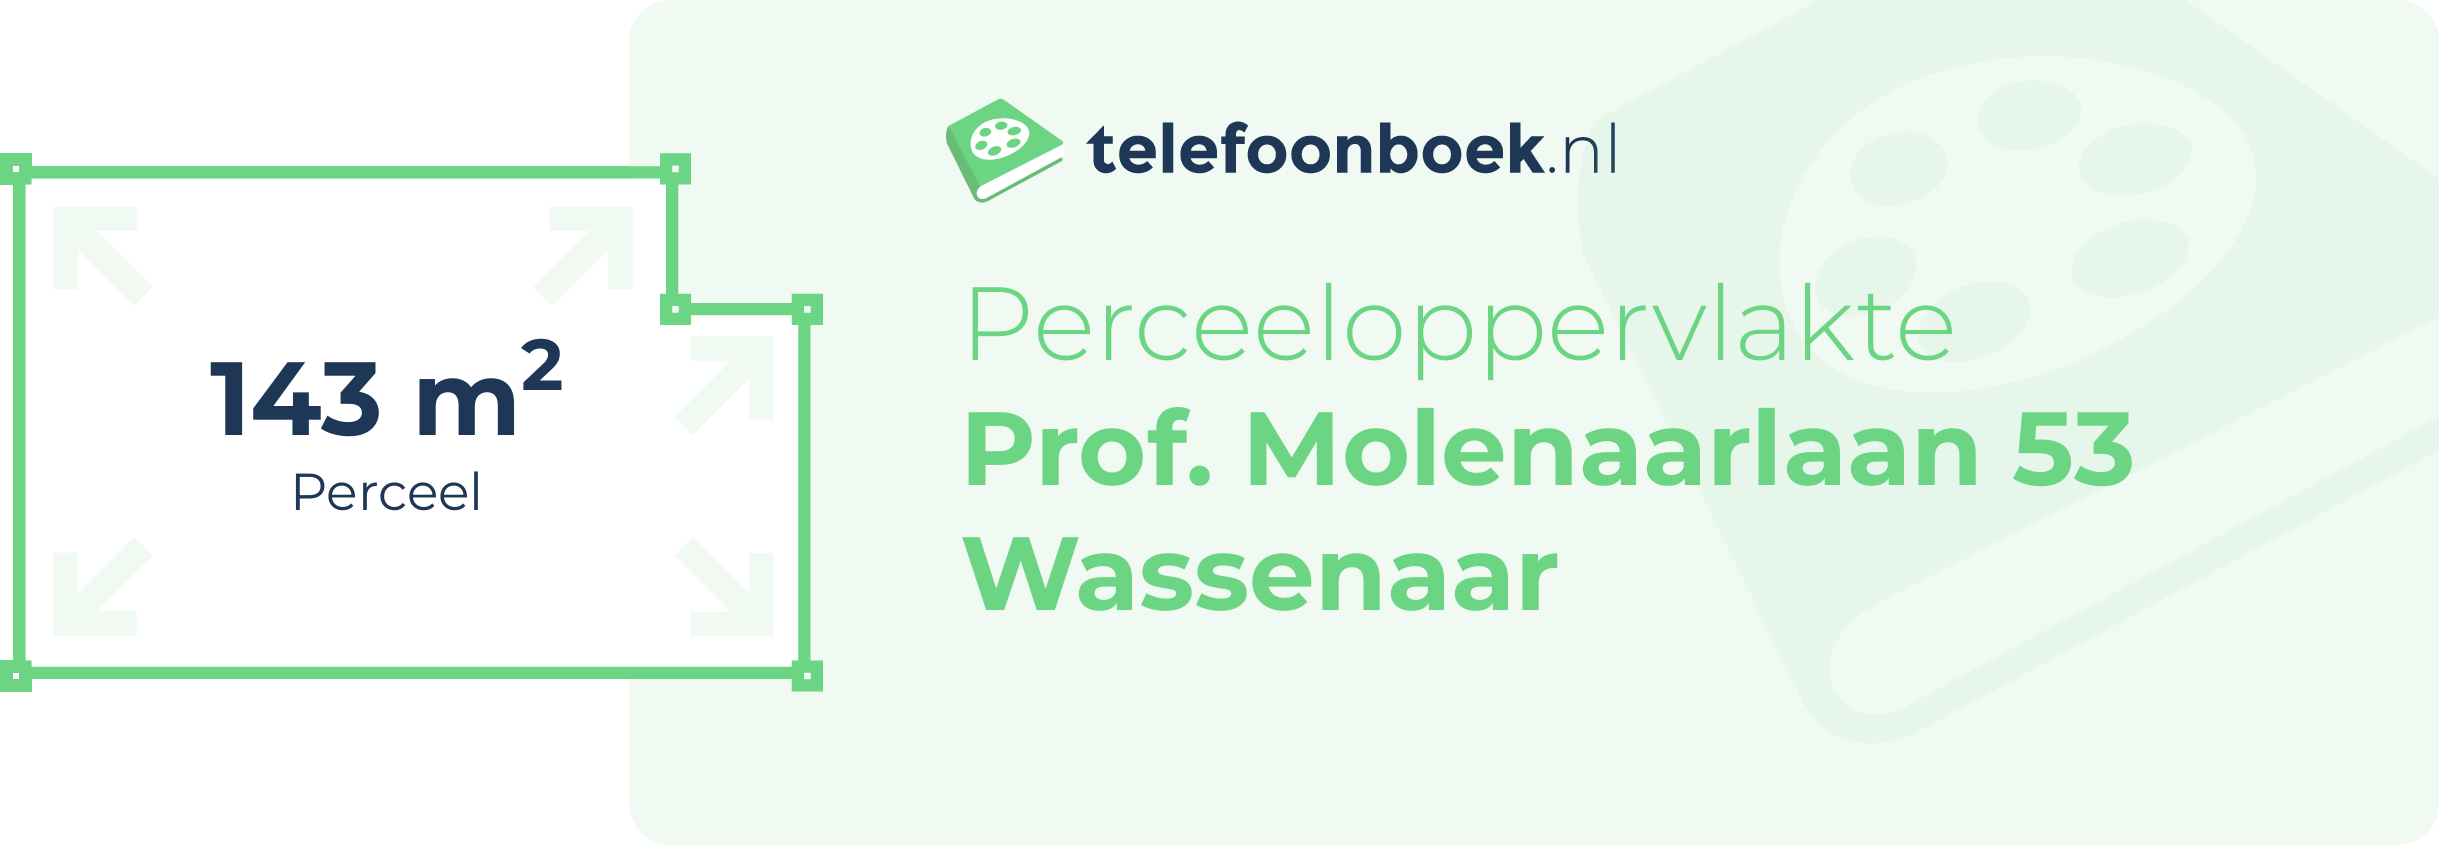 Perceeloppervlakte Prof. Molenaarlaan 53 Wassenaar